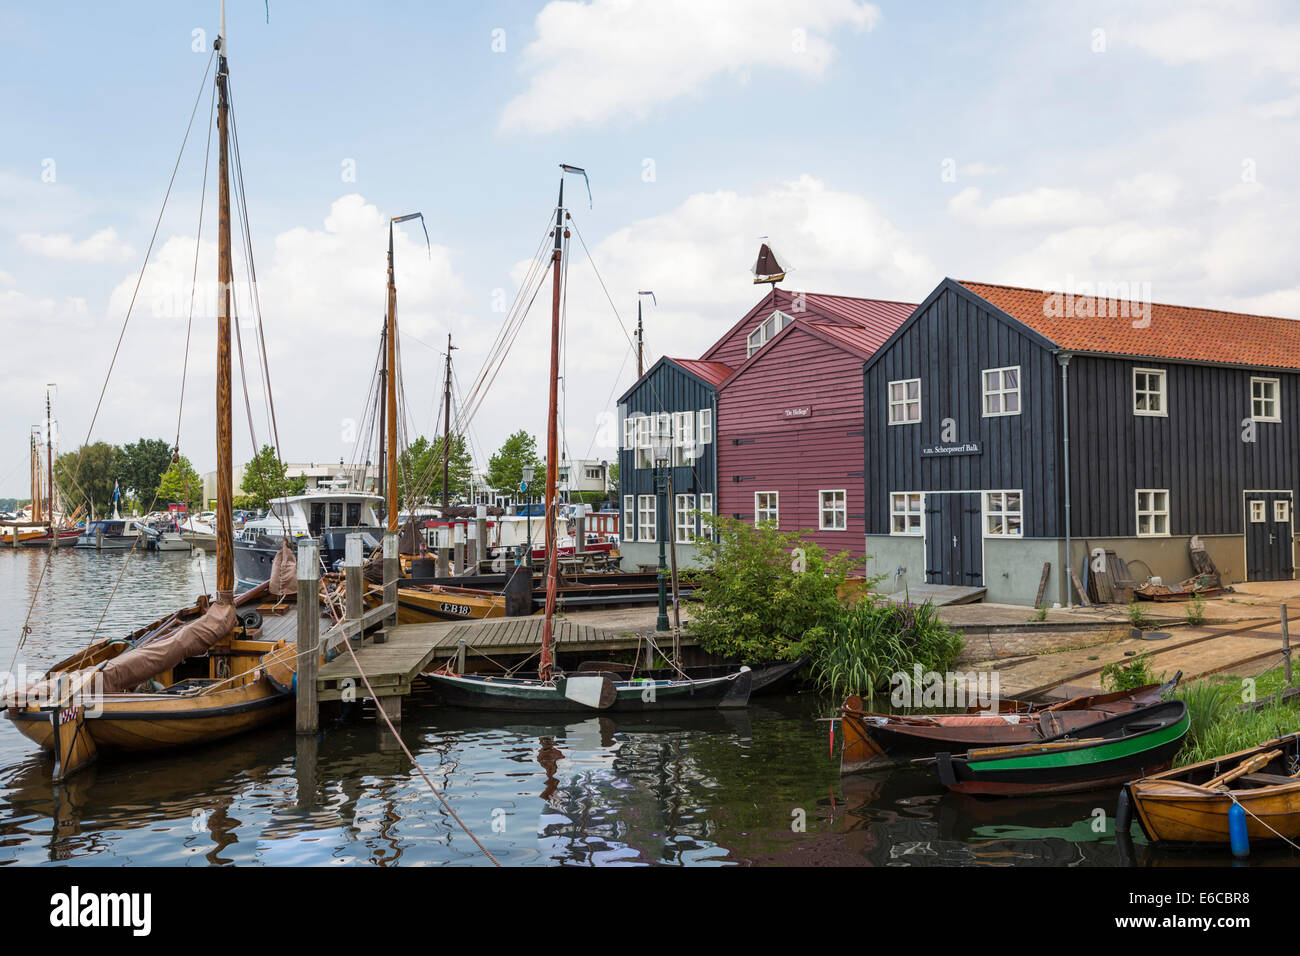 Hafen von Elburg, eine alte historische Hansestadt in den Niederlanden, mit alten hölzernen Fischerboote. Stockfoto